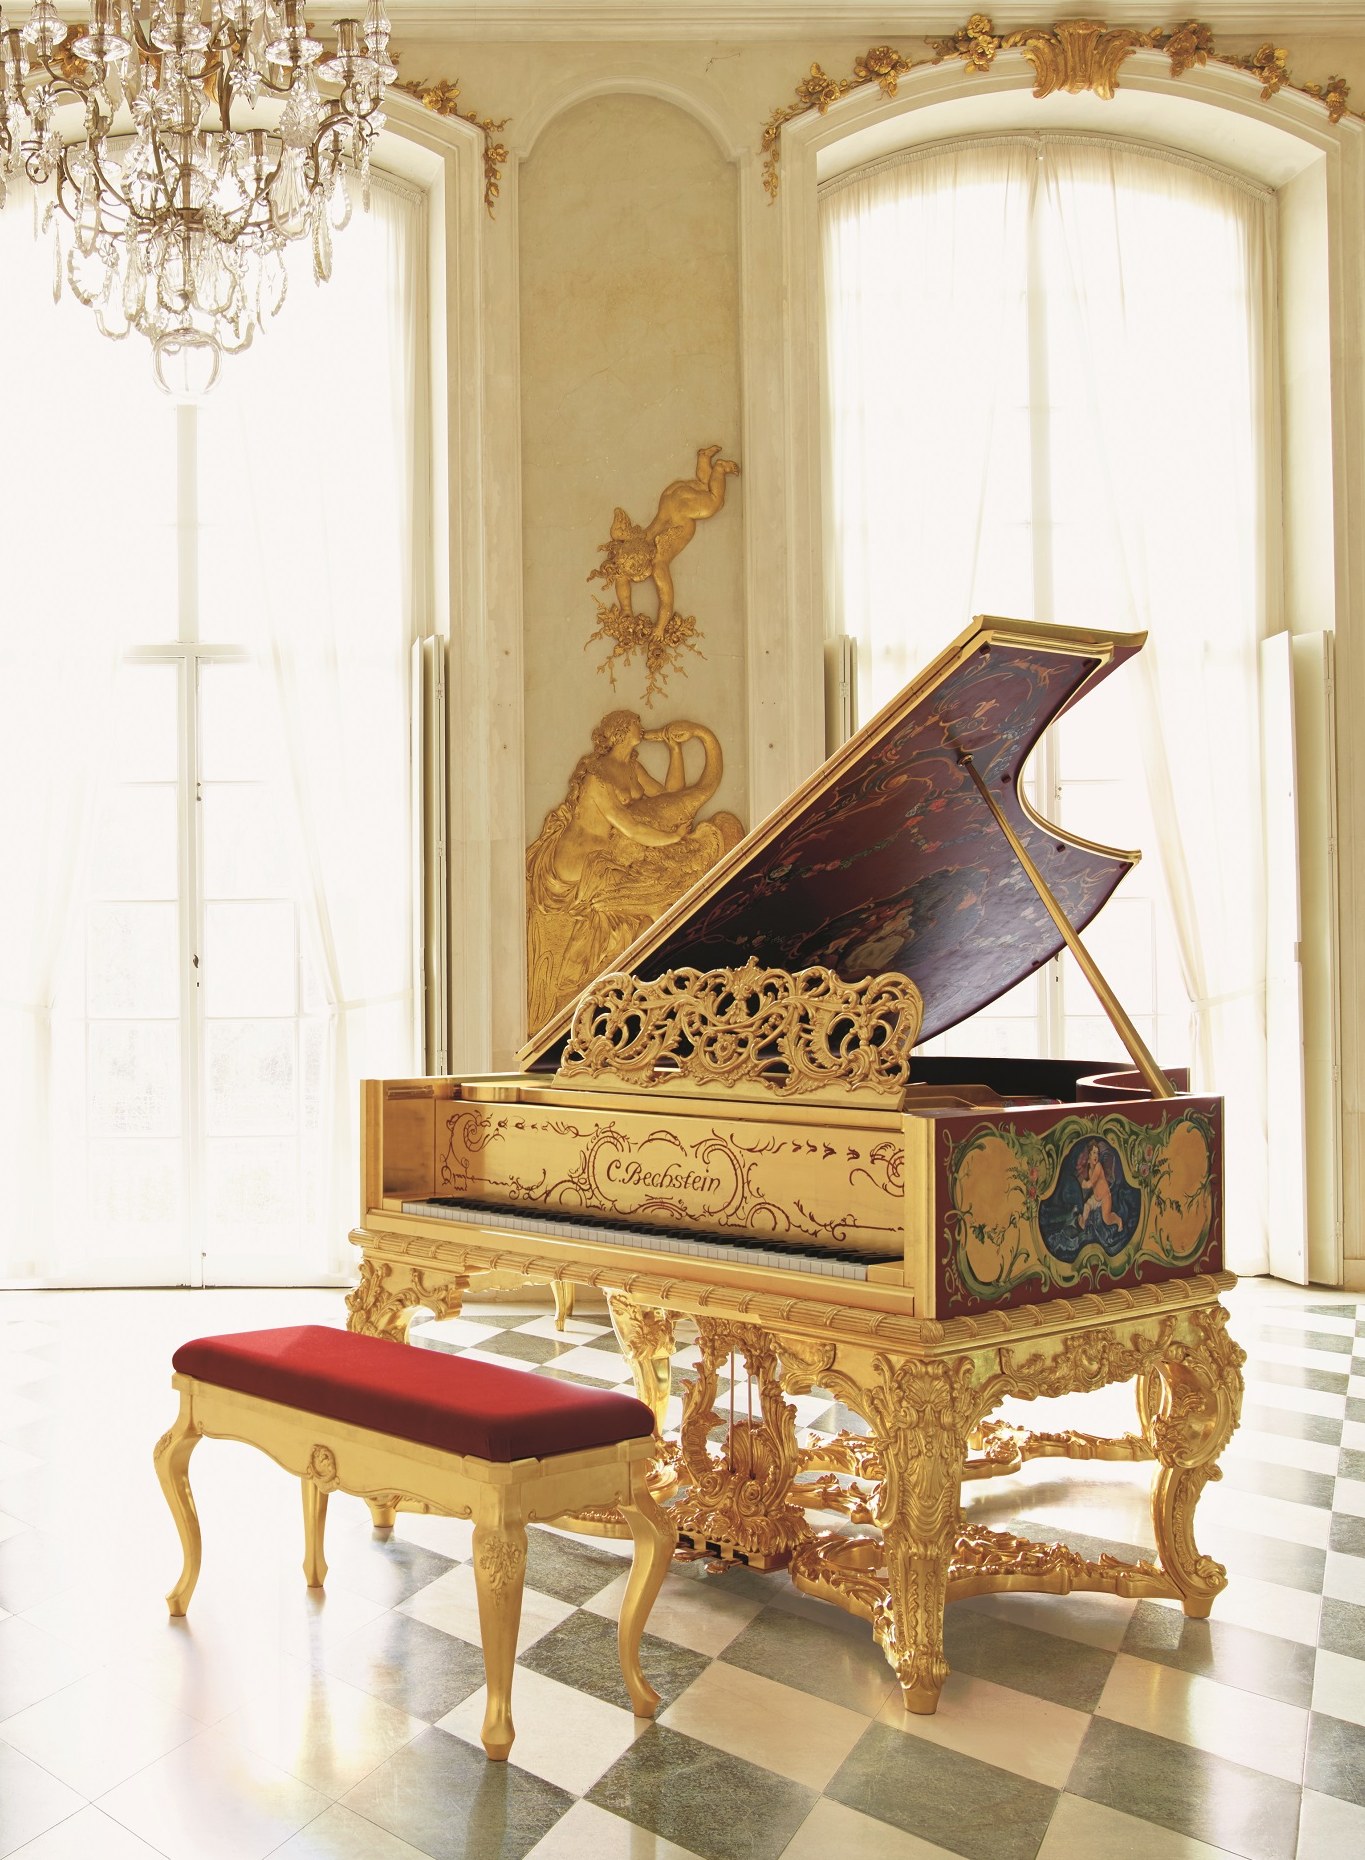 华丽洛可可风纯镀金三角钢琴,顶级手工钢琴品牌商重新打造,这曾是